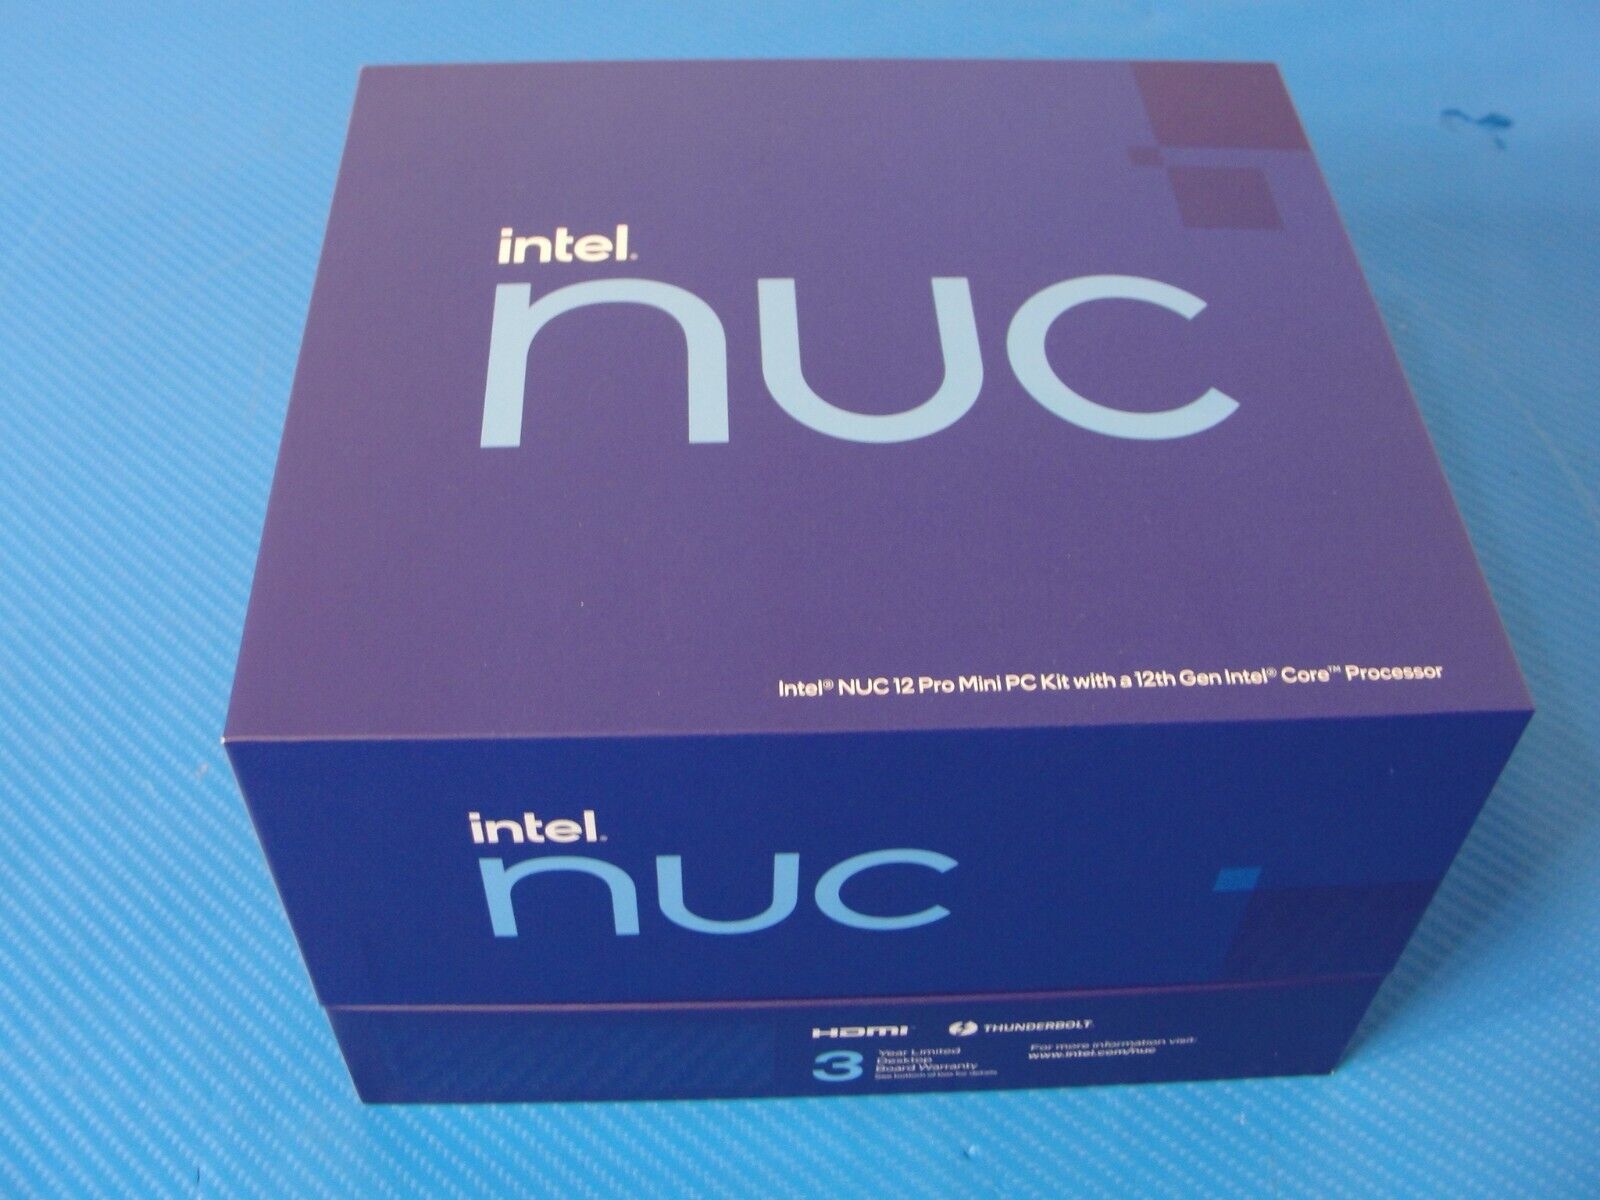 Intel Mini Desktop i7. NUC NUC10i7FNKN. Windows 10 Pro 16GB, 512GB SSD, WIFI, BT